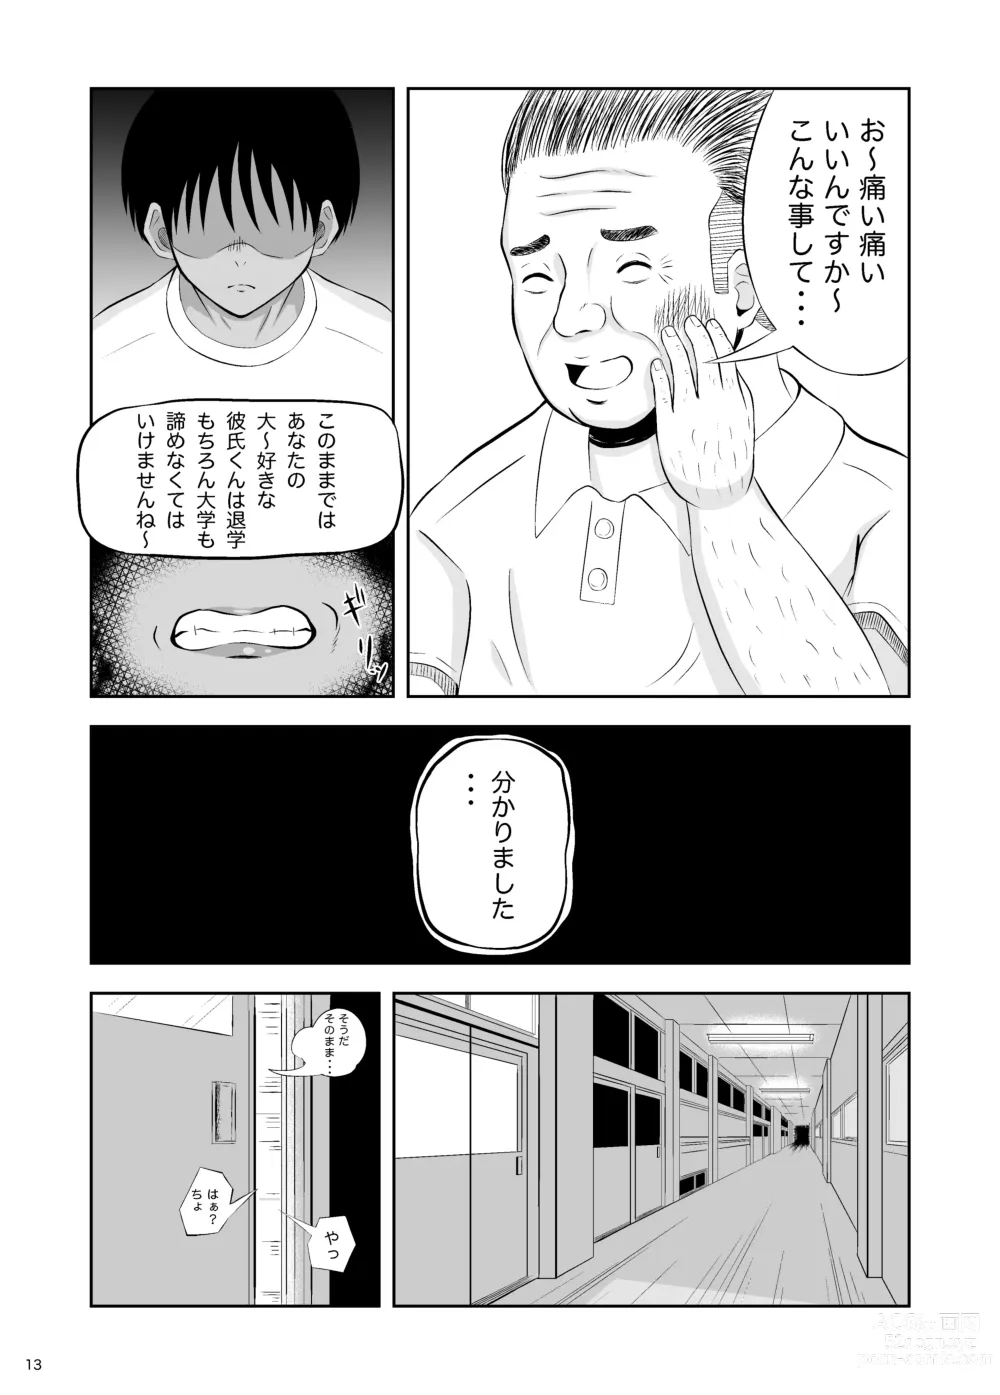 Page 13 of doujinshi Zettai ni Makenai kara